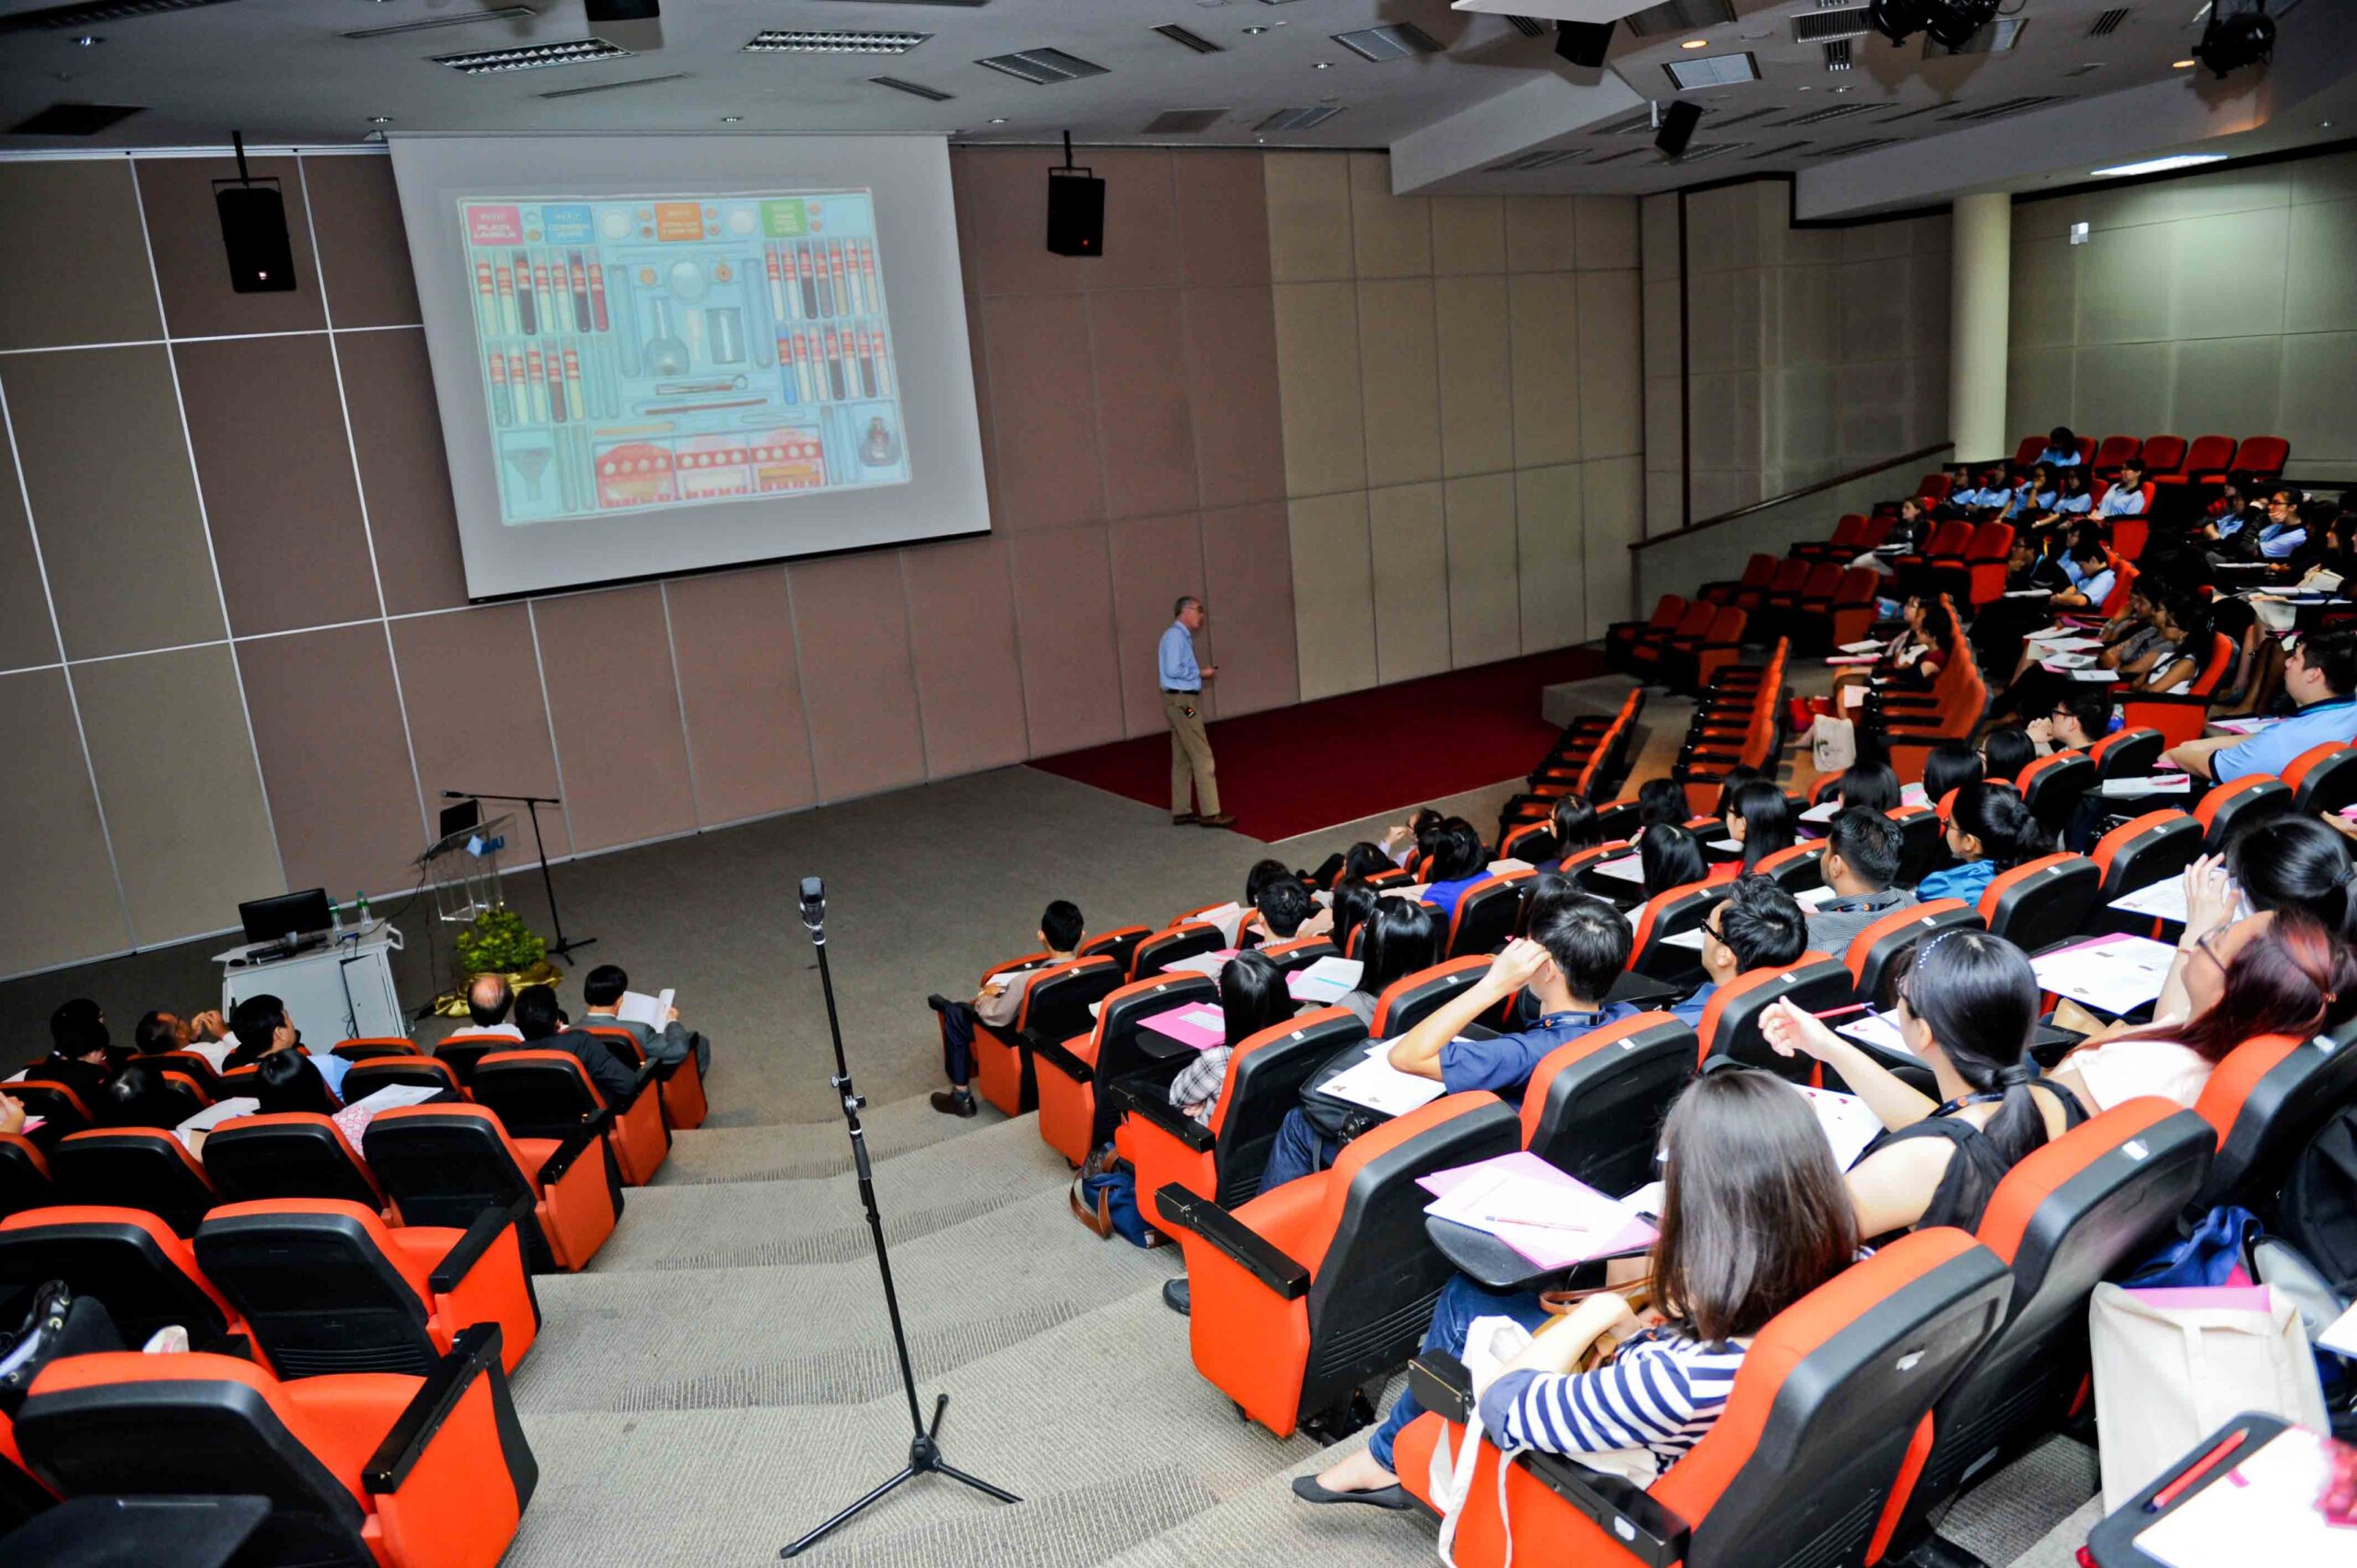 بورسیه پزشکی در دانشگاه بین المللی پزشکی مالزی IMU برای سال ۲۰۱۸